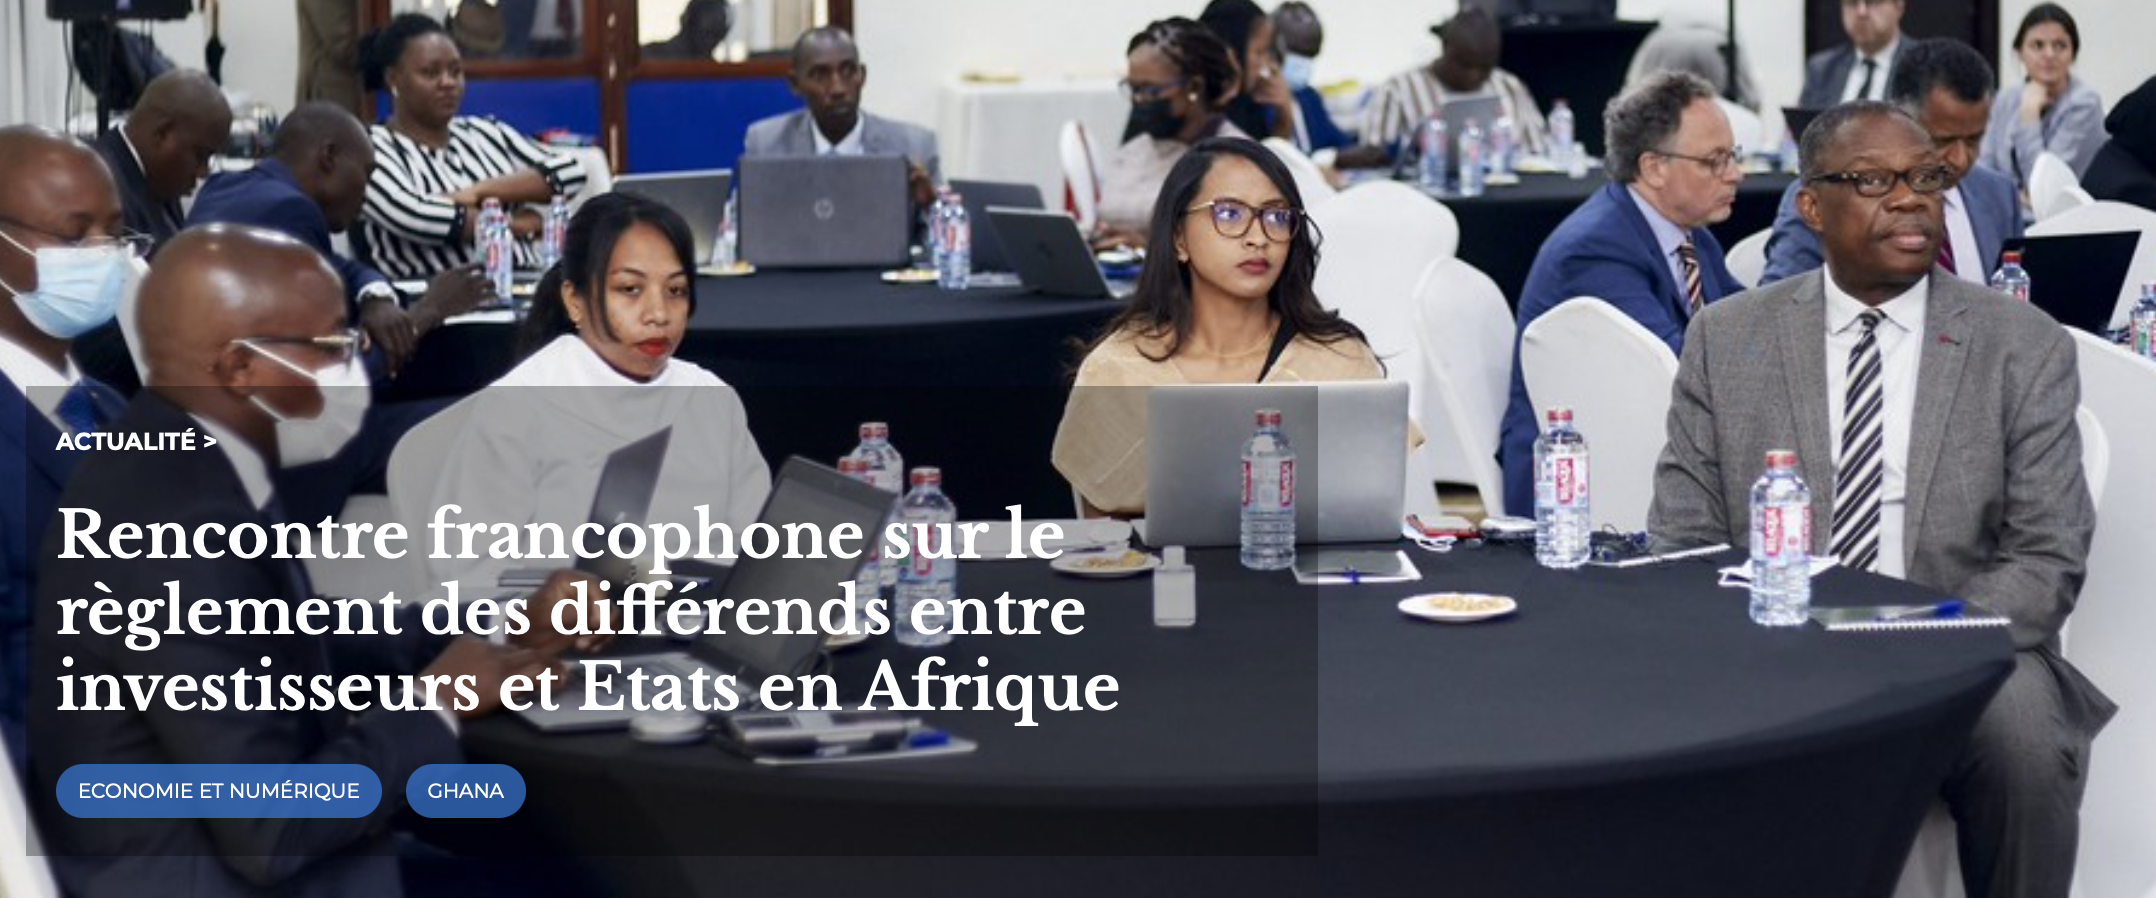 Rencontre francophone sur le règlement des différends entre investisseurs et Etats en Afrique